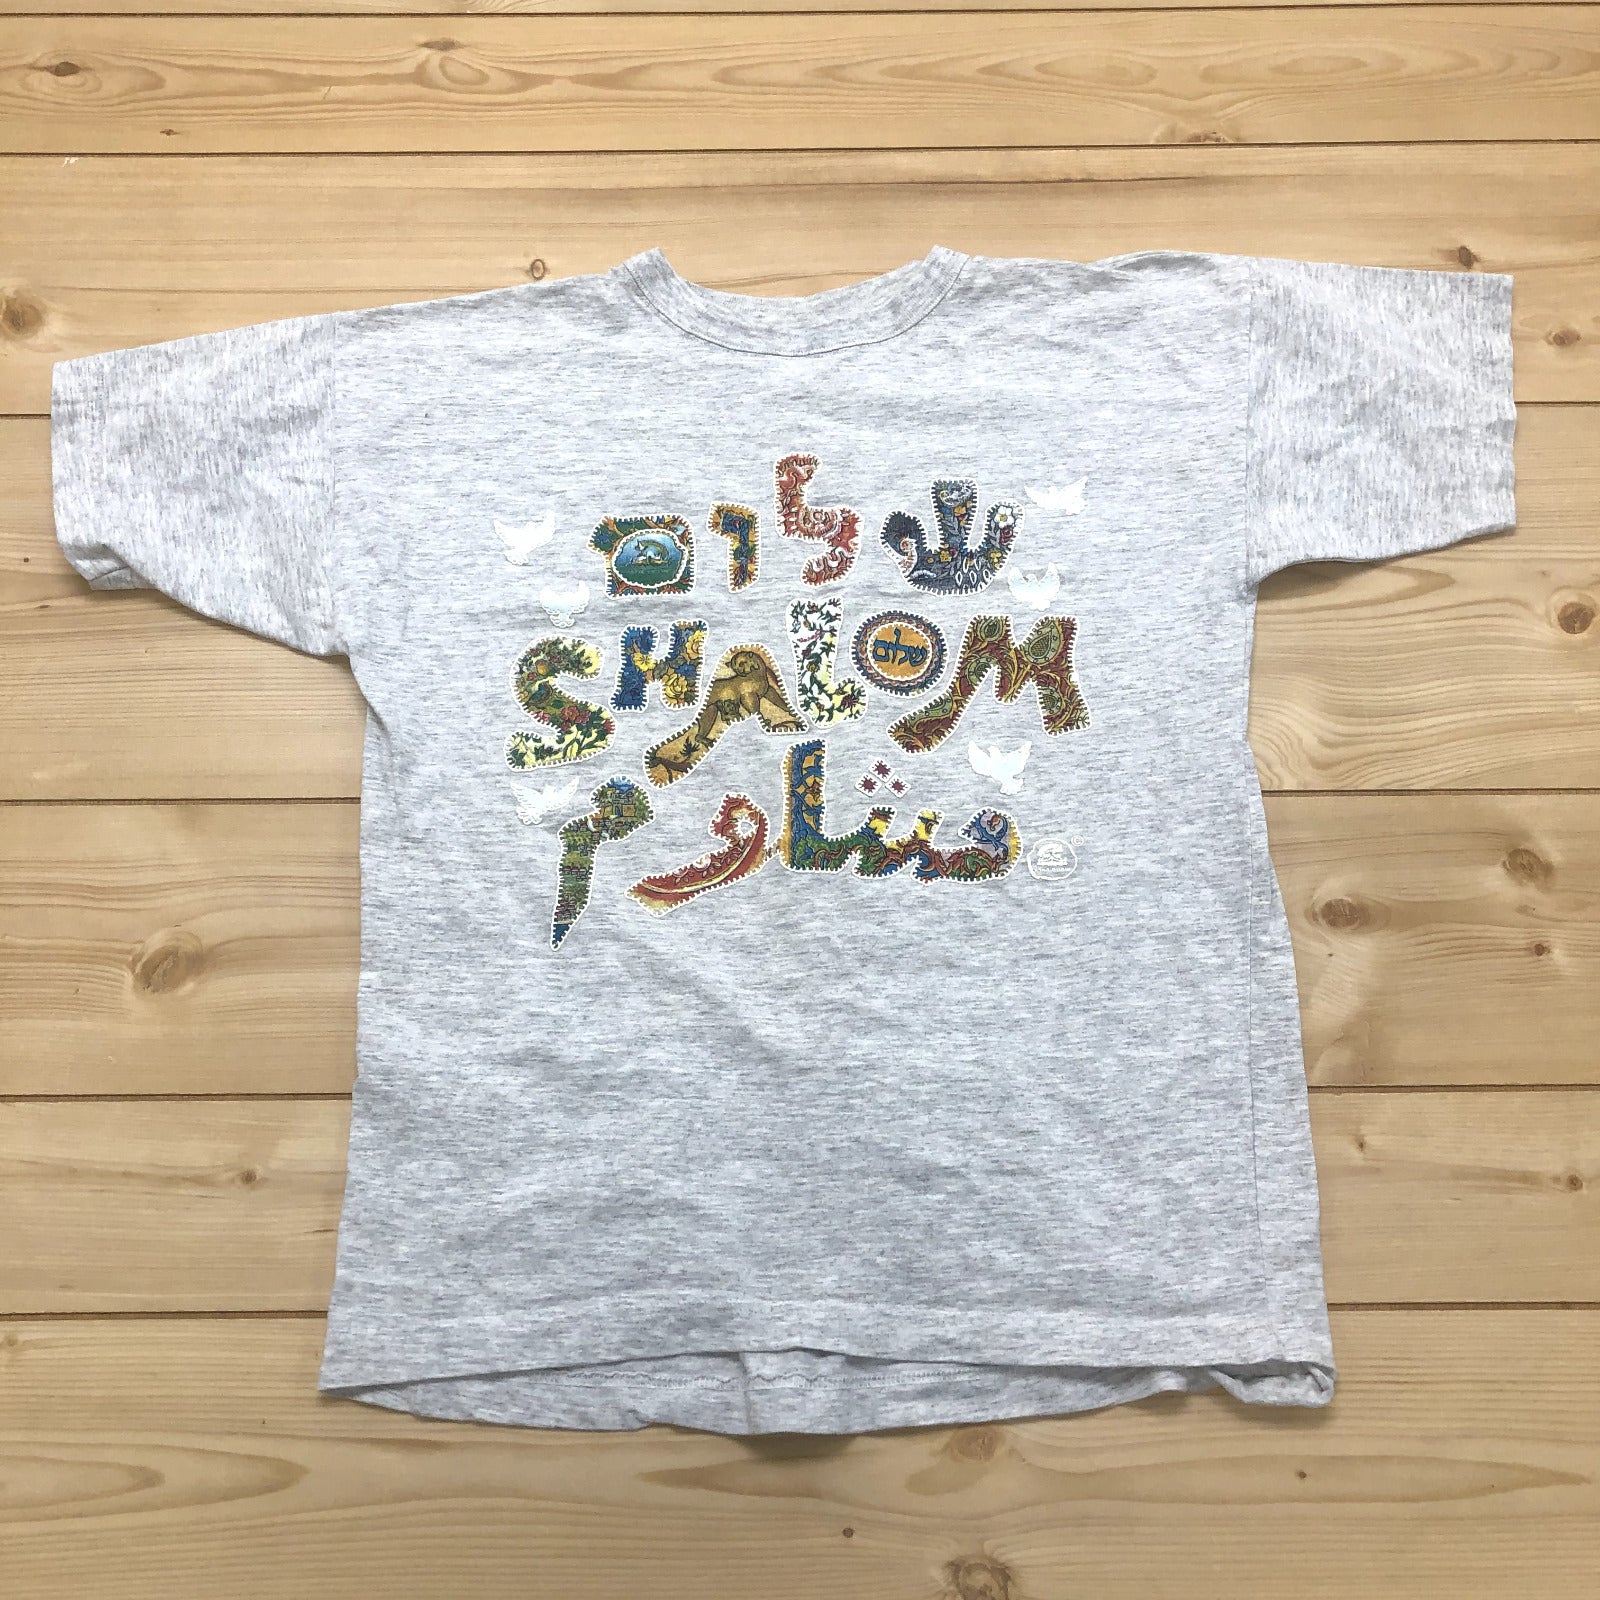 Art of the Land Grey Shalom Crew Neck Short Sleeve T-Shirt Adult Size Medium